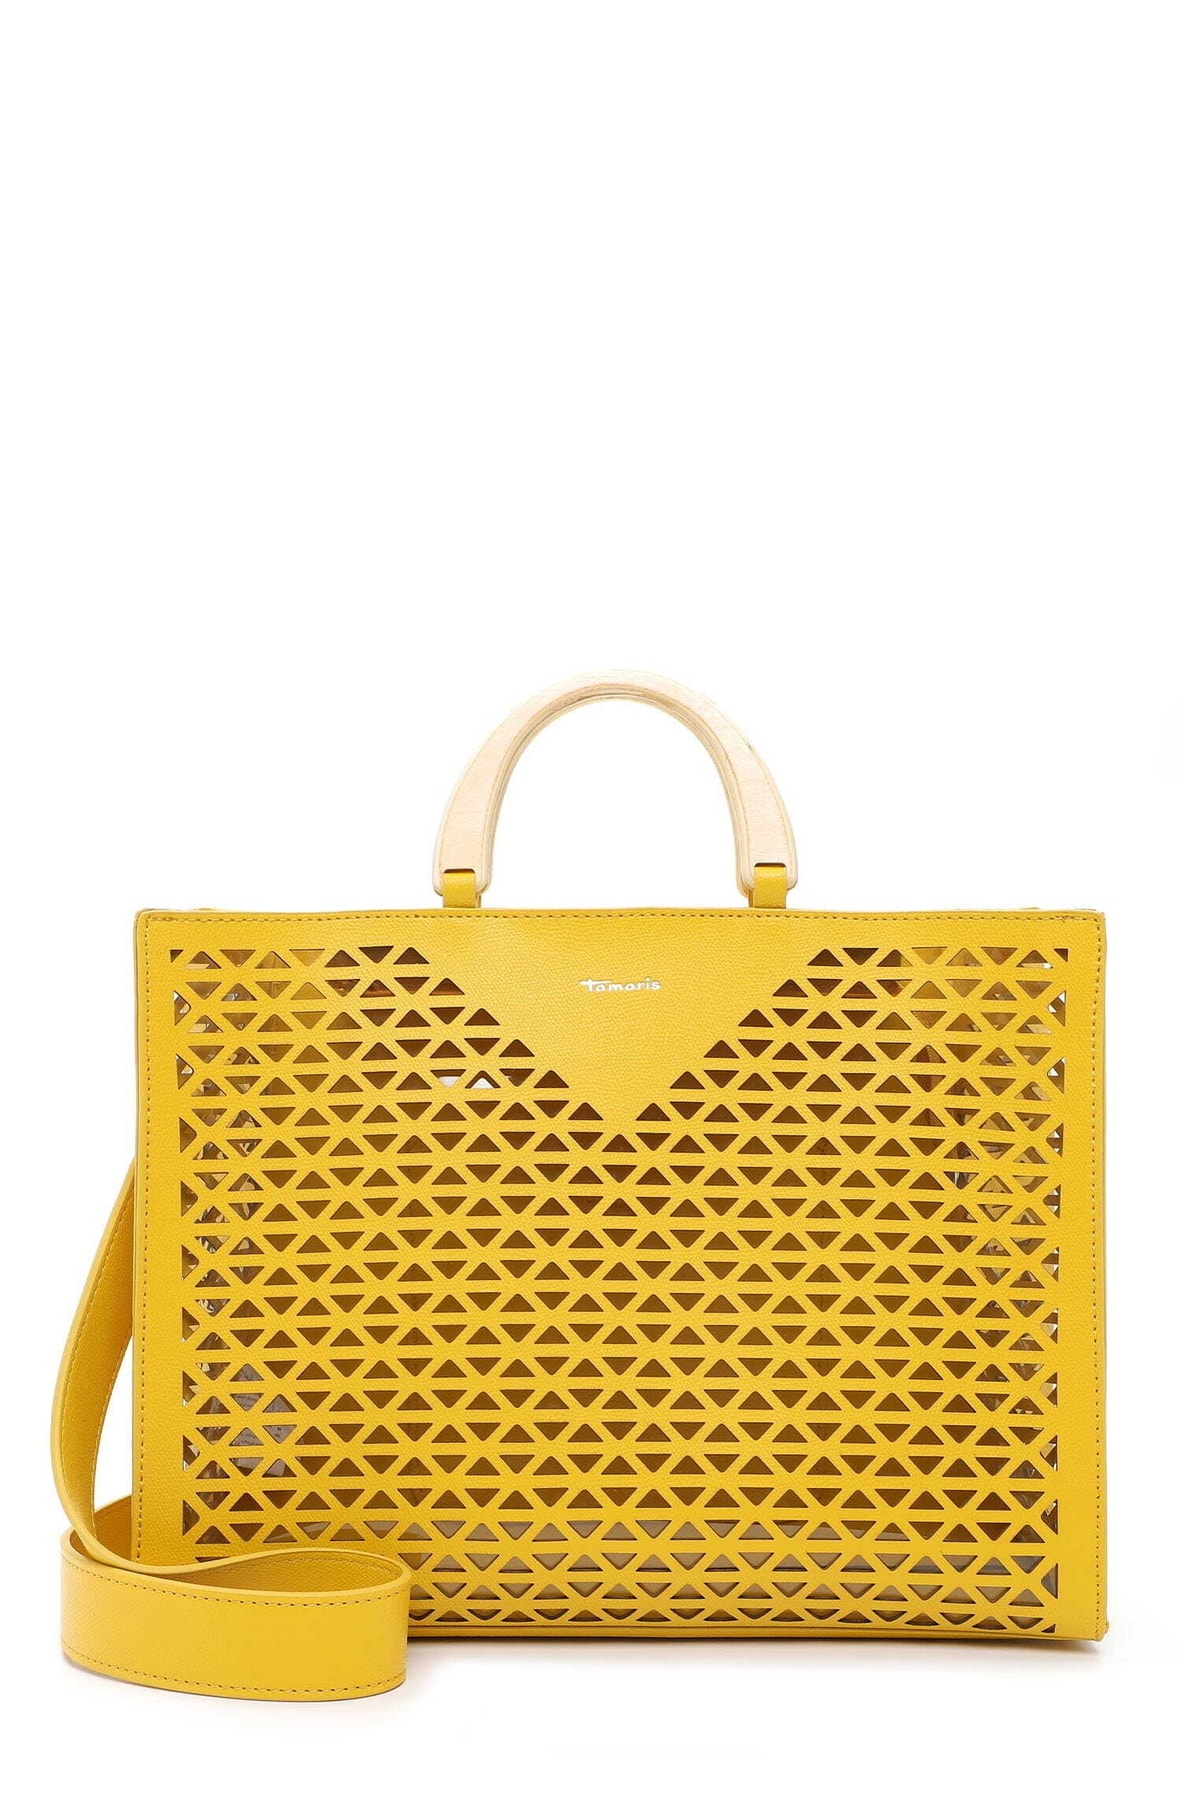 Tamaris Handtasche Gelb Strukturiert